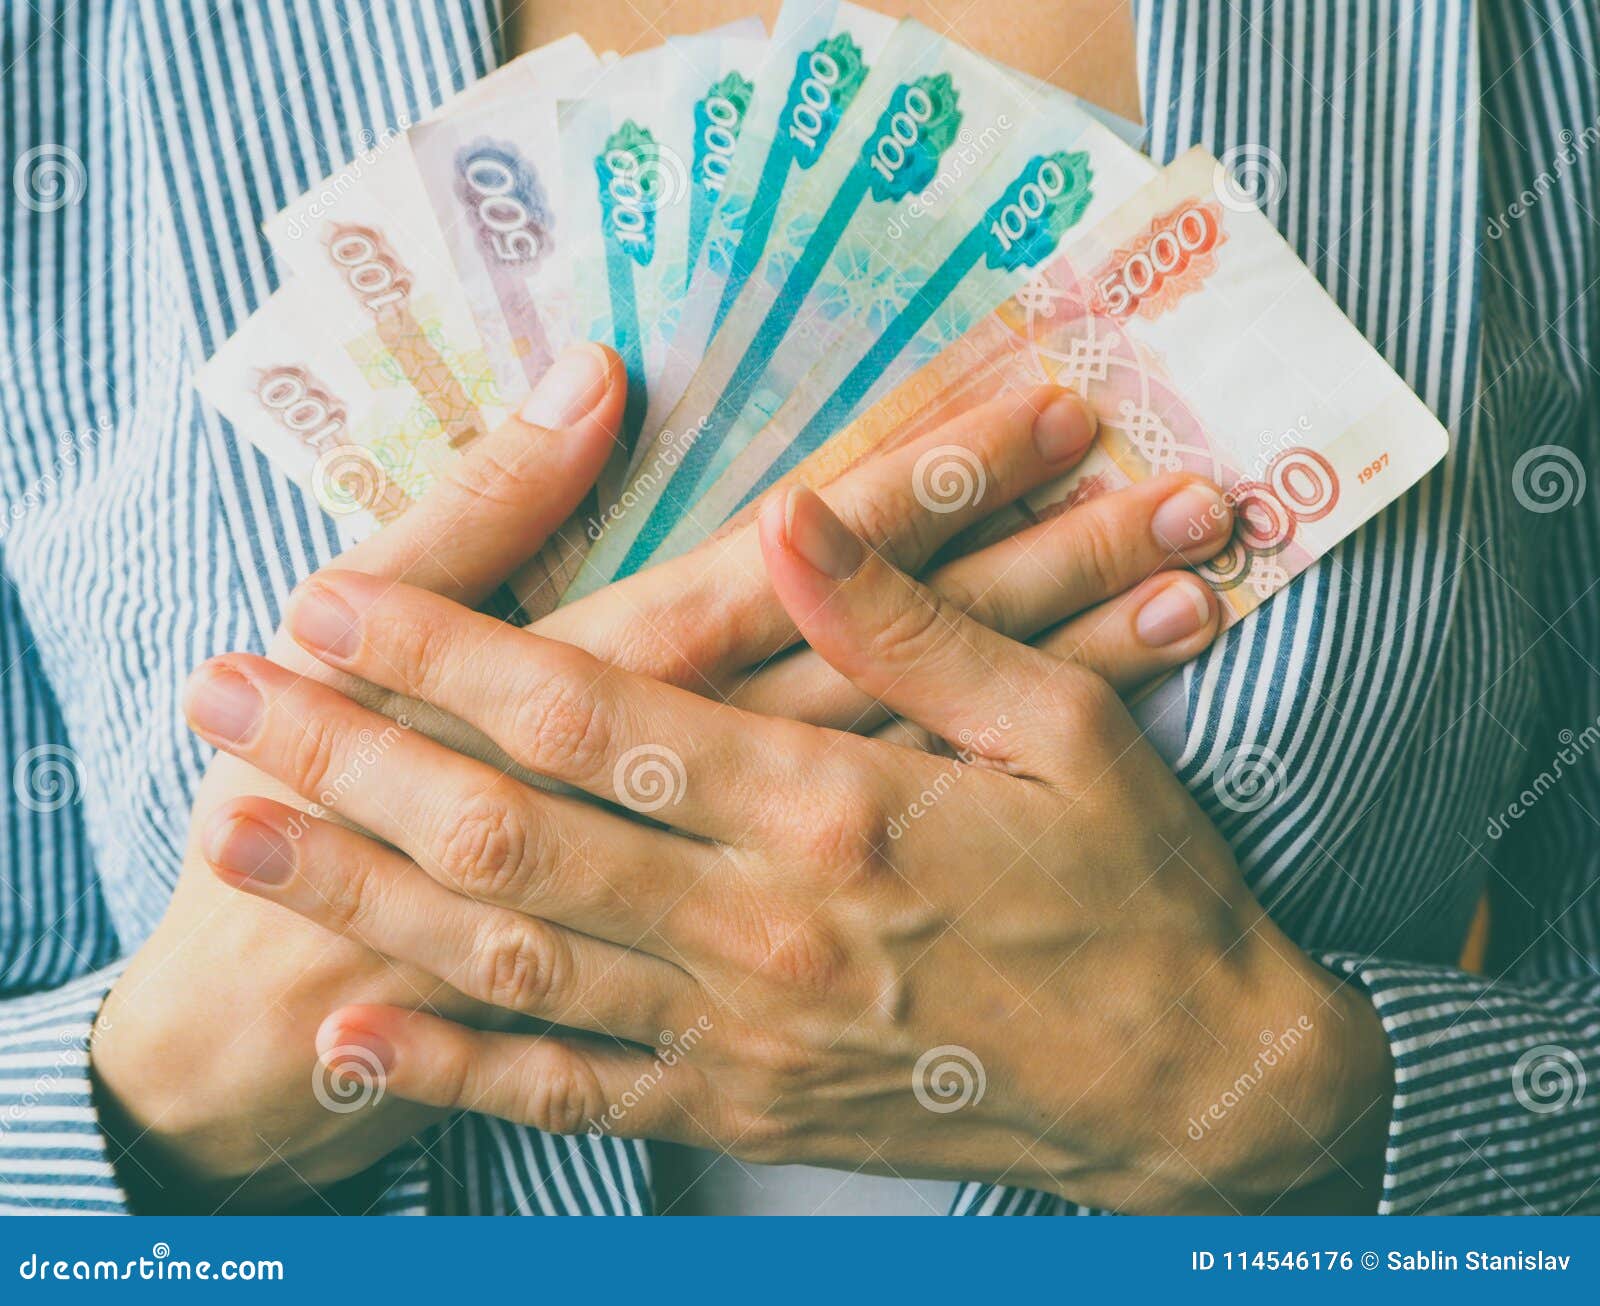 Пенсия 500 рублей. Рубли в руках. Свободные деньги. Заработная плата. Высокая зарплата.